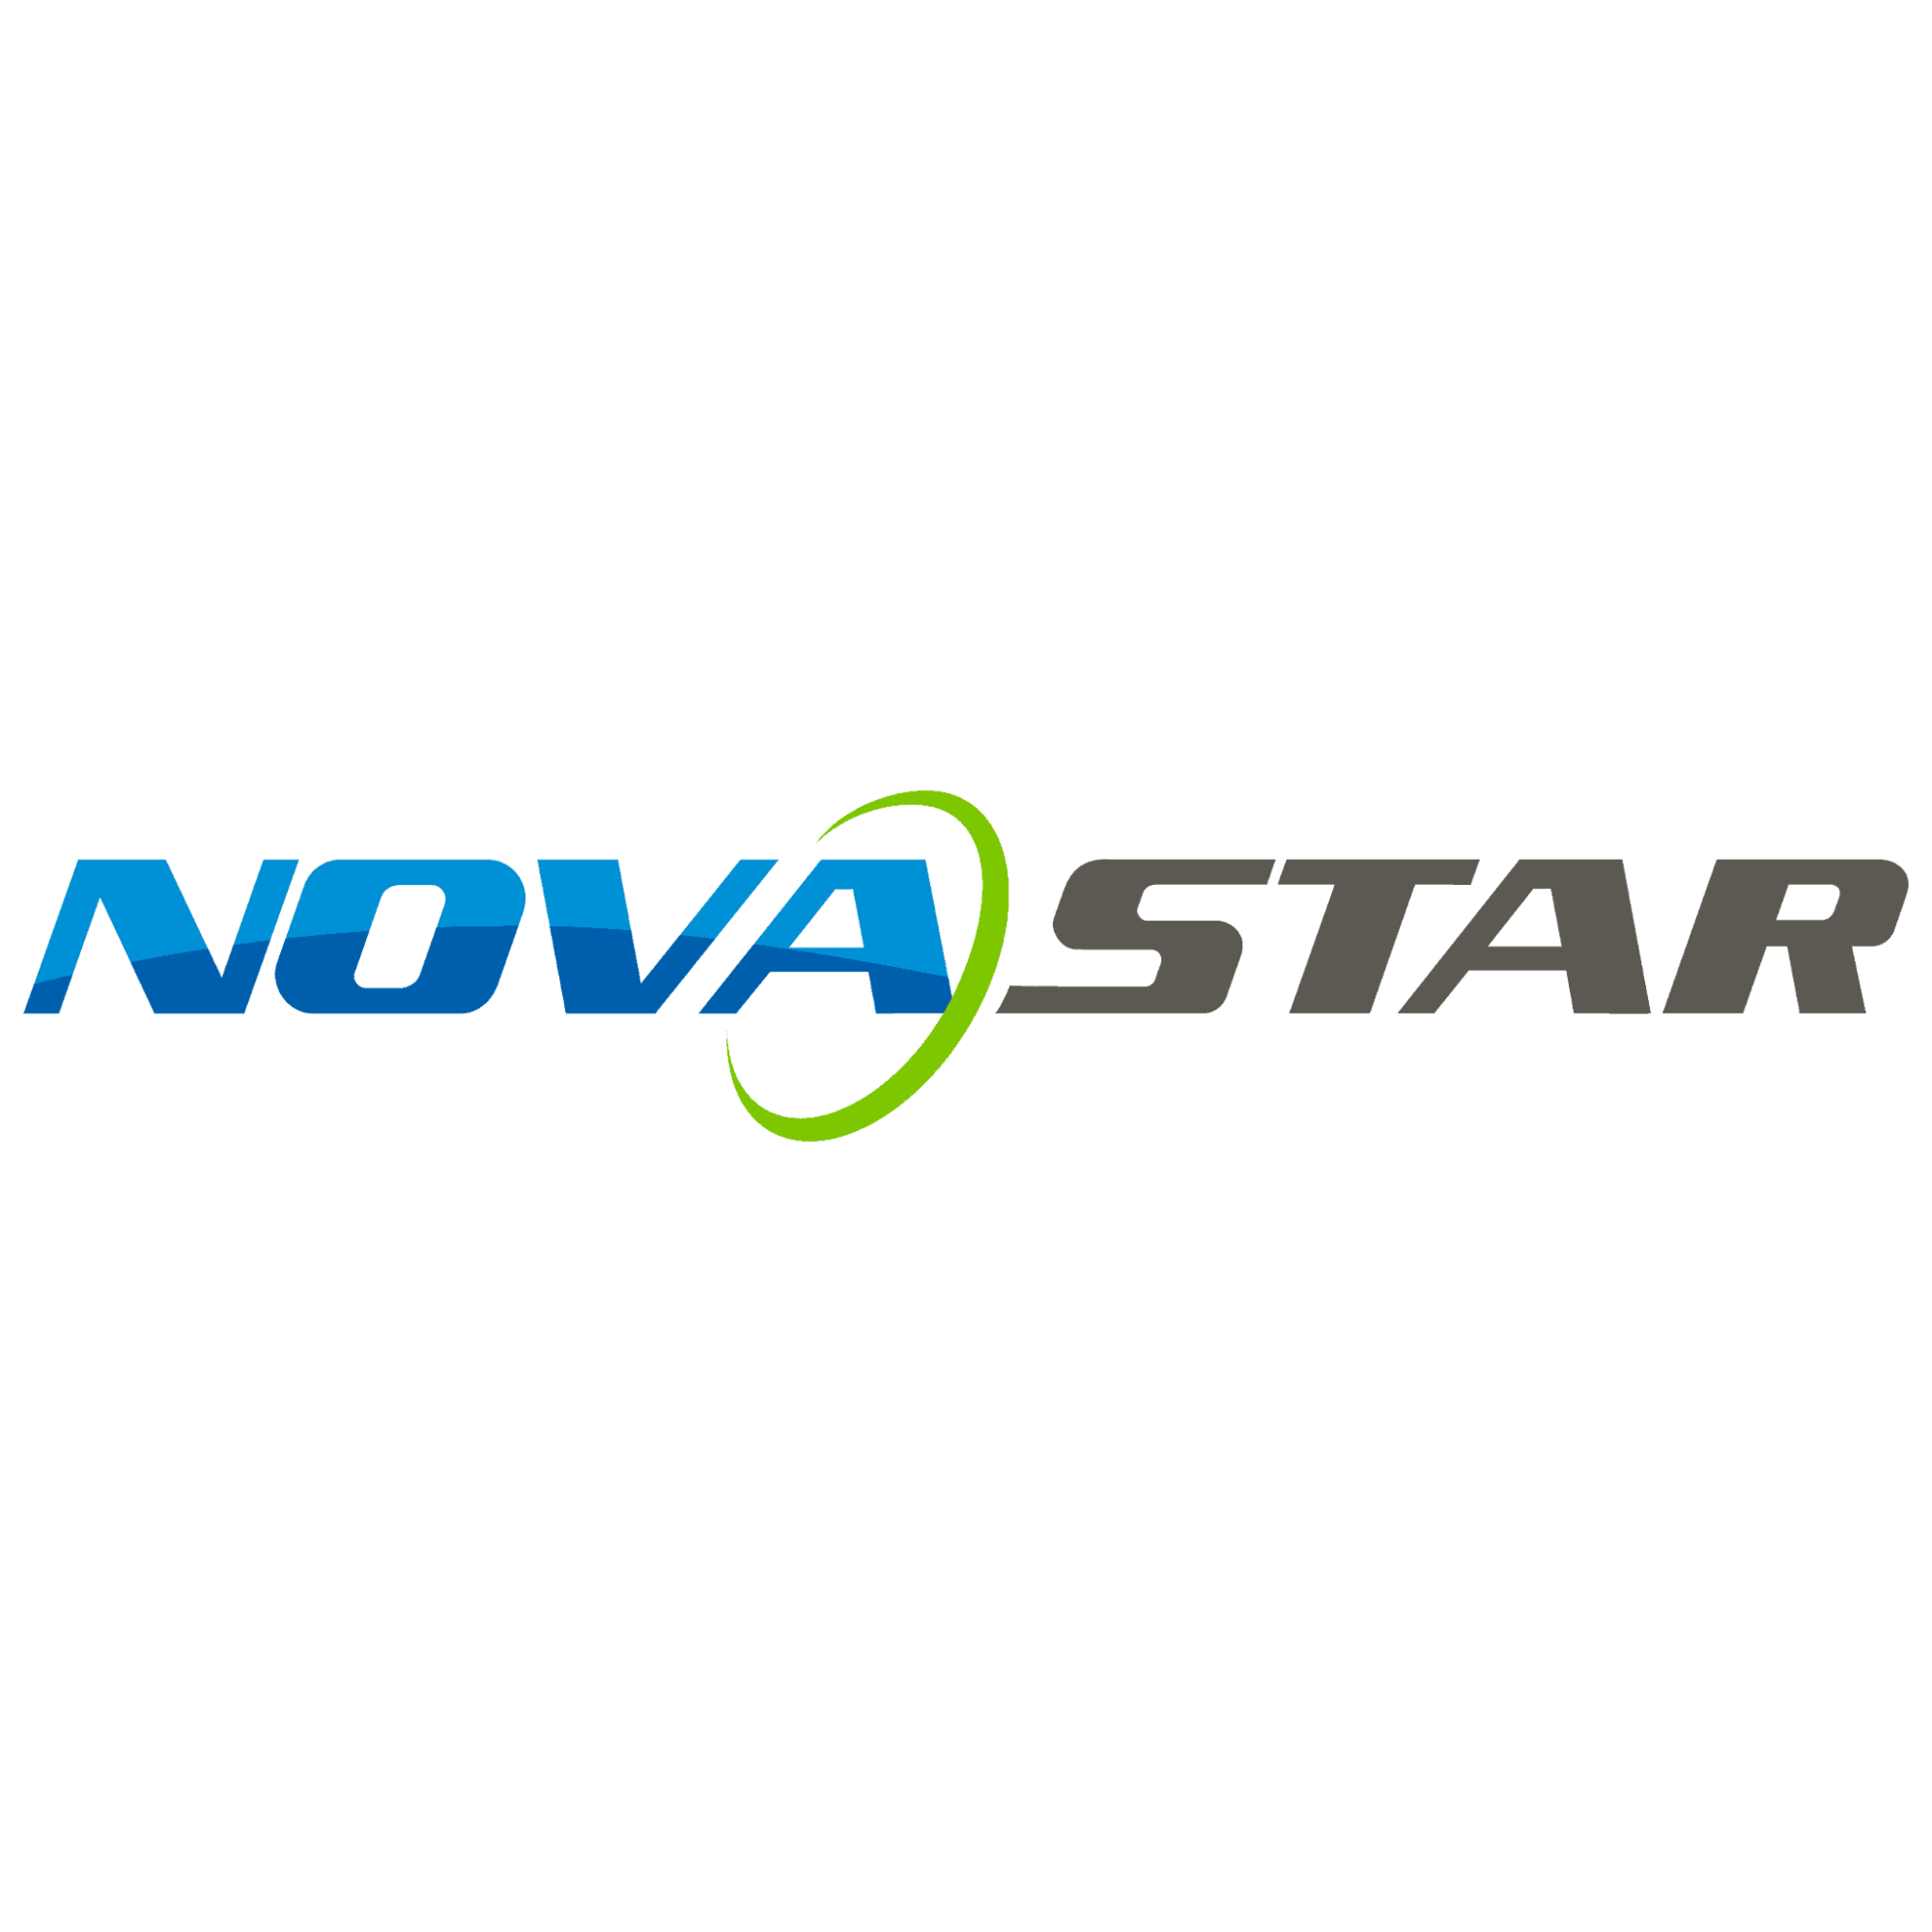 Новастар. Nova логотип. НОВАСТАР лого. Nova Star logo. Компания Cyberia Nova лого.